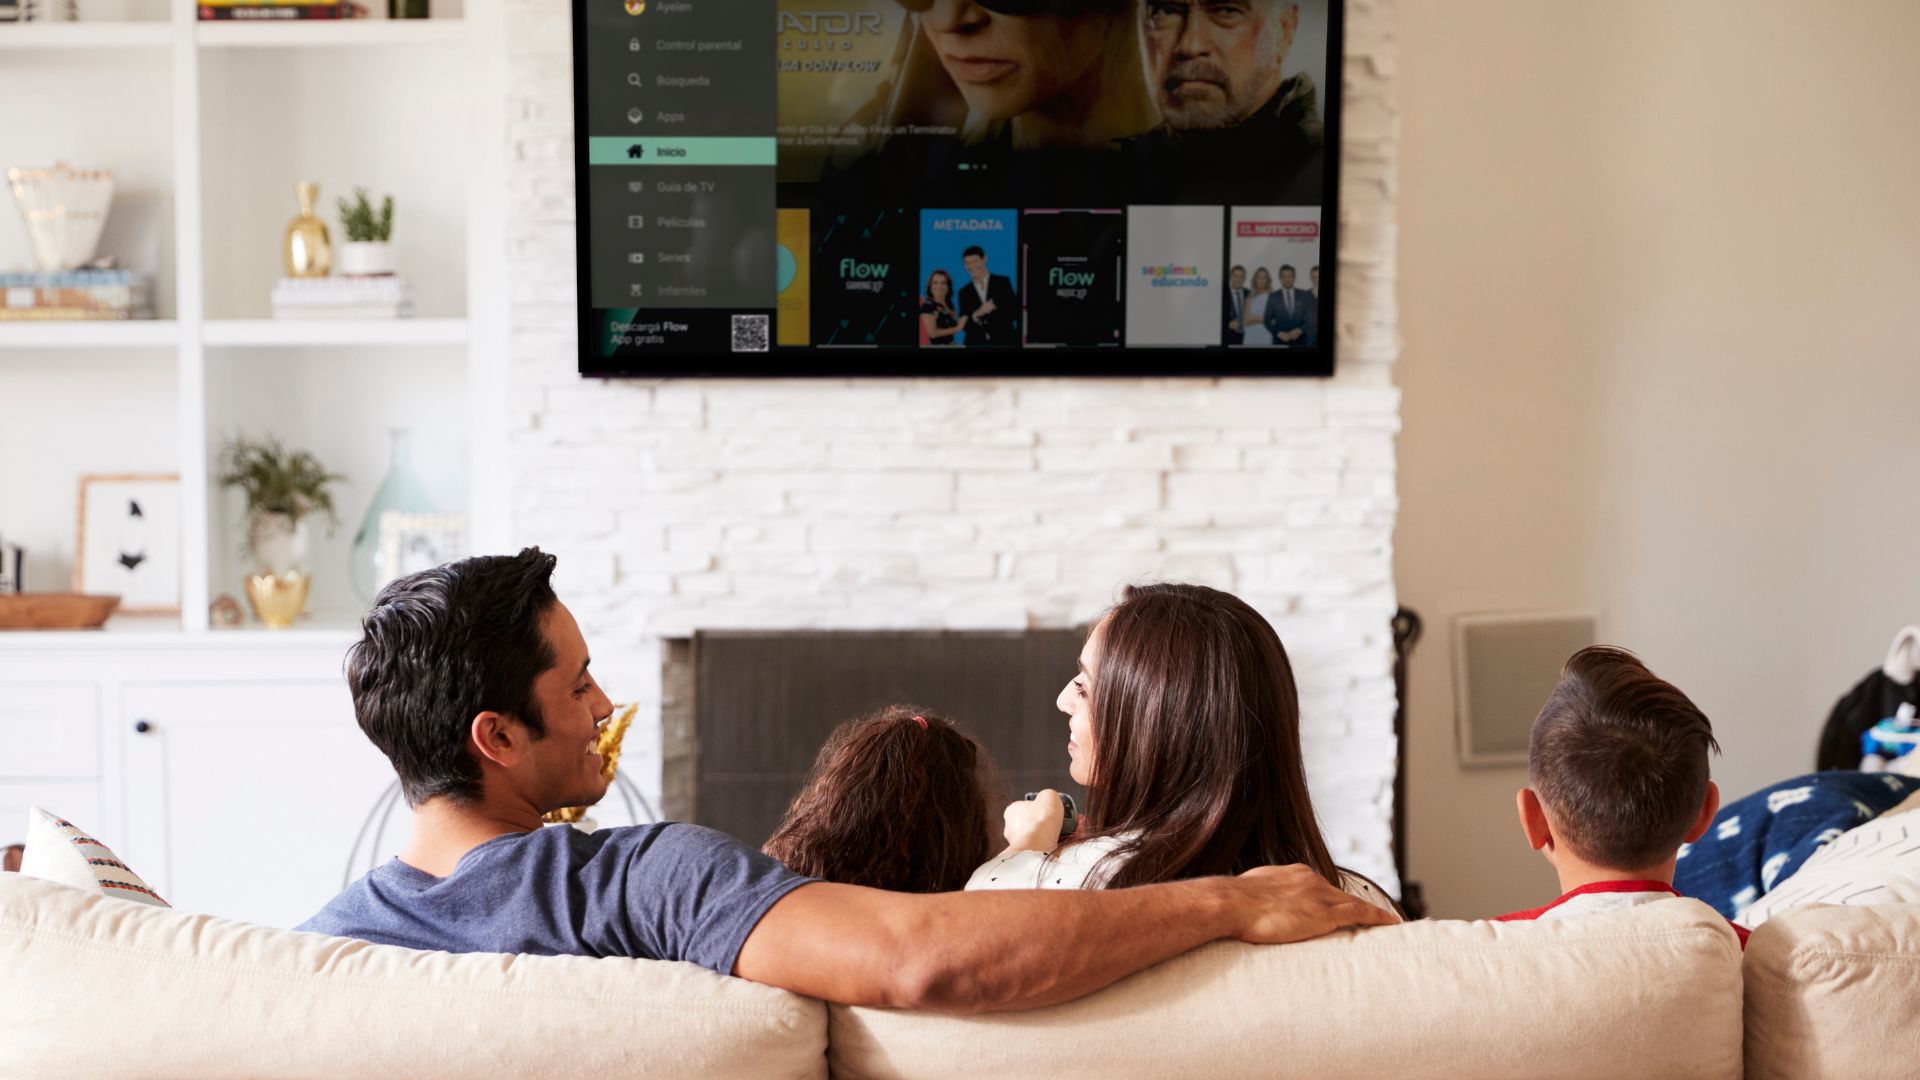 Cómo ver televisión abierta en tu smart TV sin antena? - El Sol de